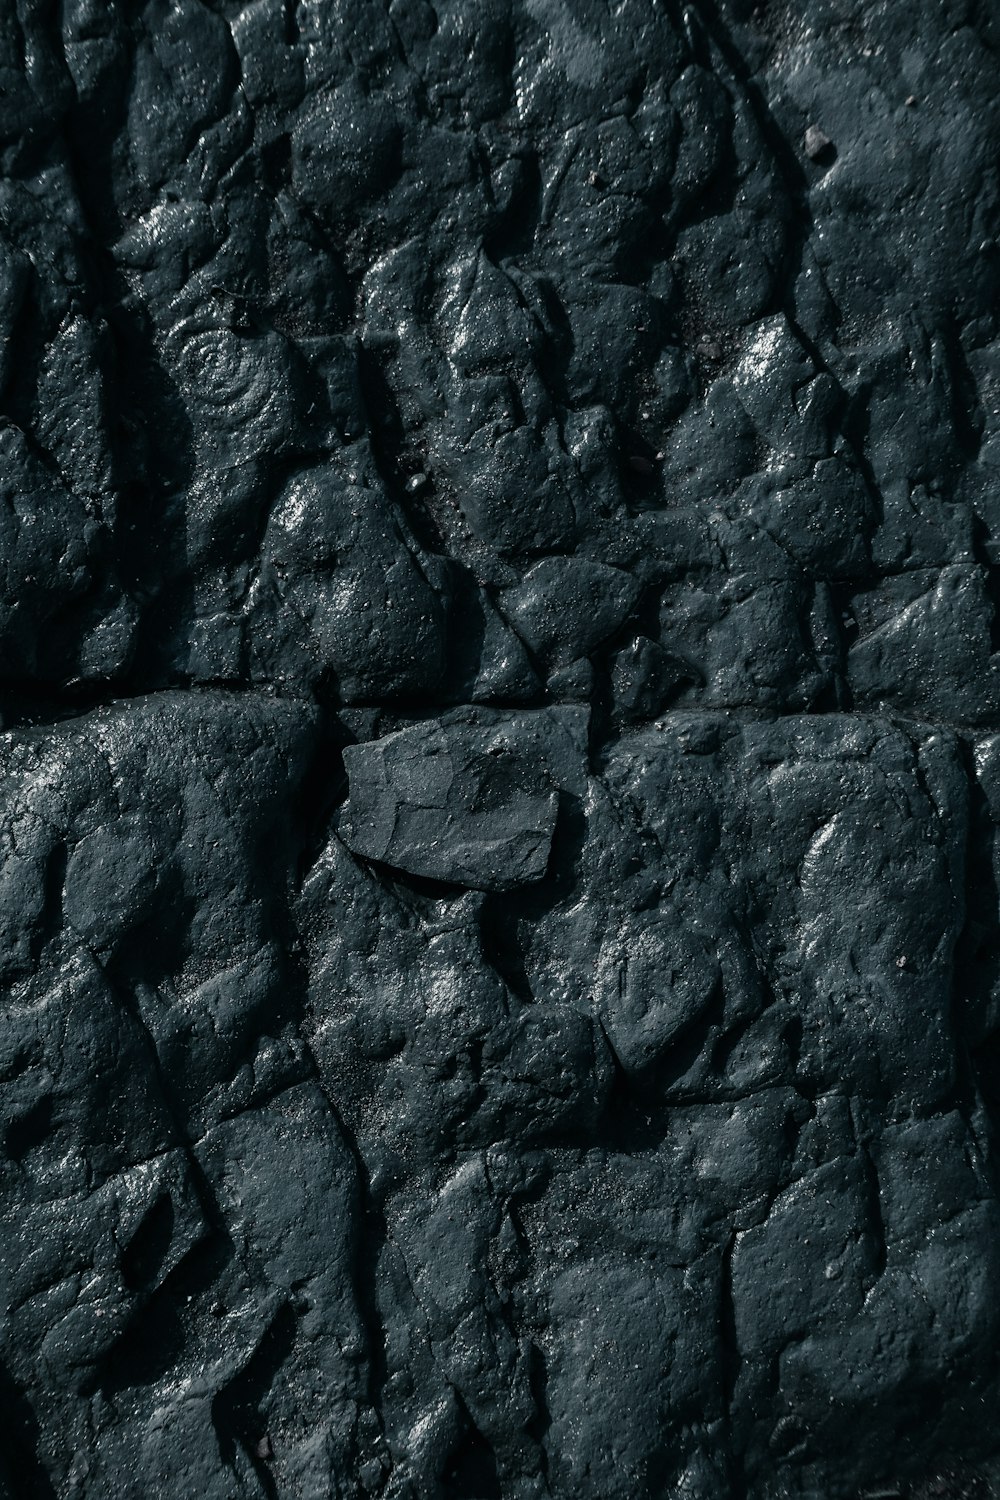 a close up of a black rock texture